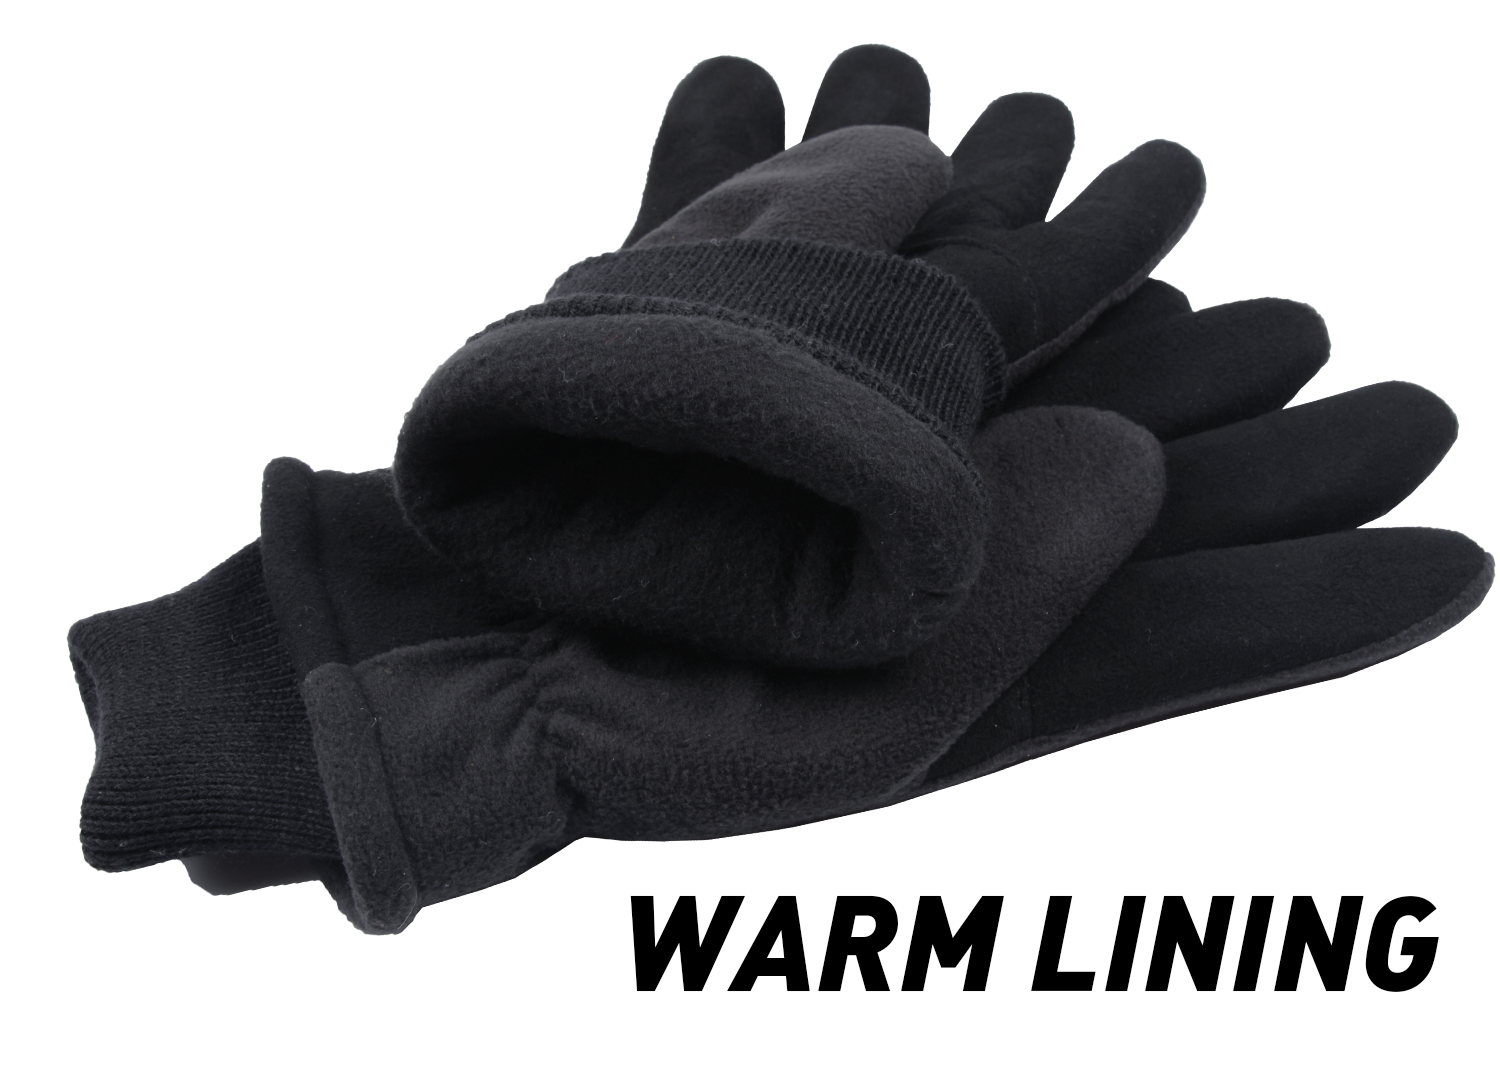 Outdoor-Sport-Men-Women-Winter-Warm-Gloves-Ski-Skiing-Deerskin-Leather-Cycling-1241914